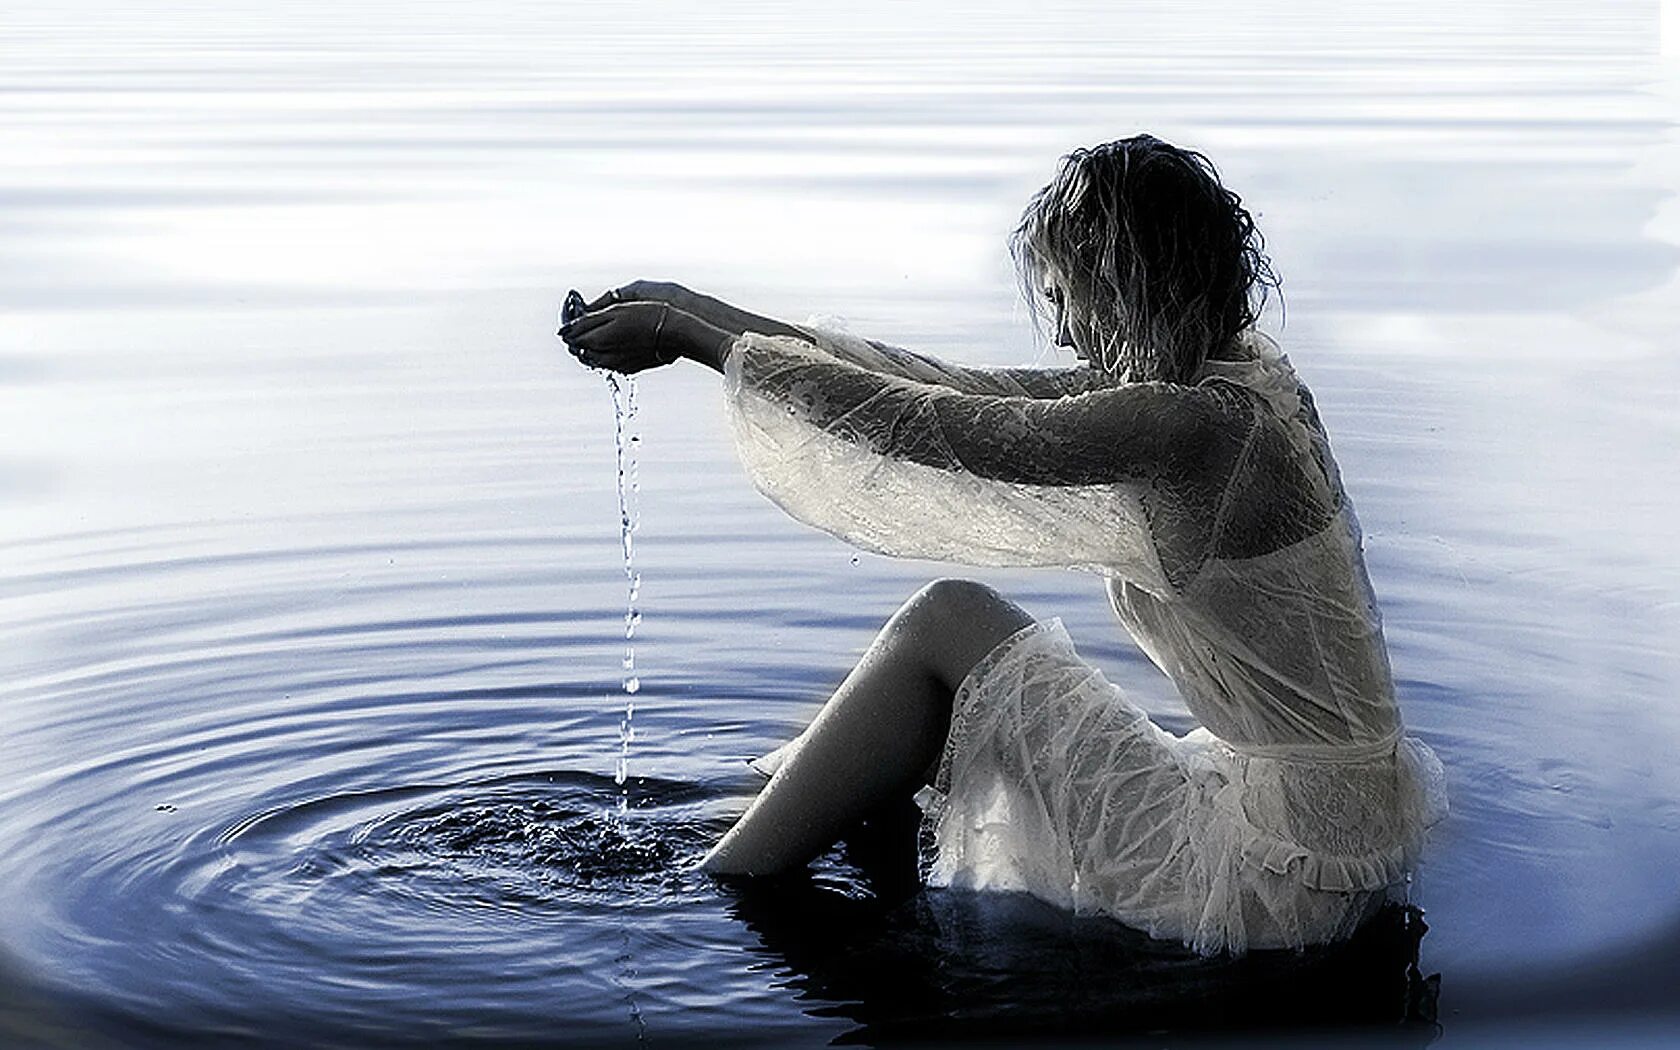 Вода уносит жизни. В глубине души. Любите жизнь картинки. Любовь в воде. В водовороте чувств.